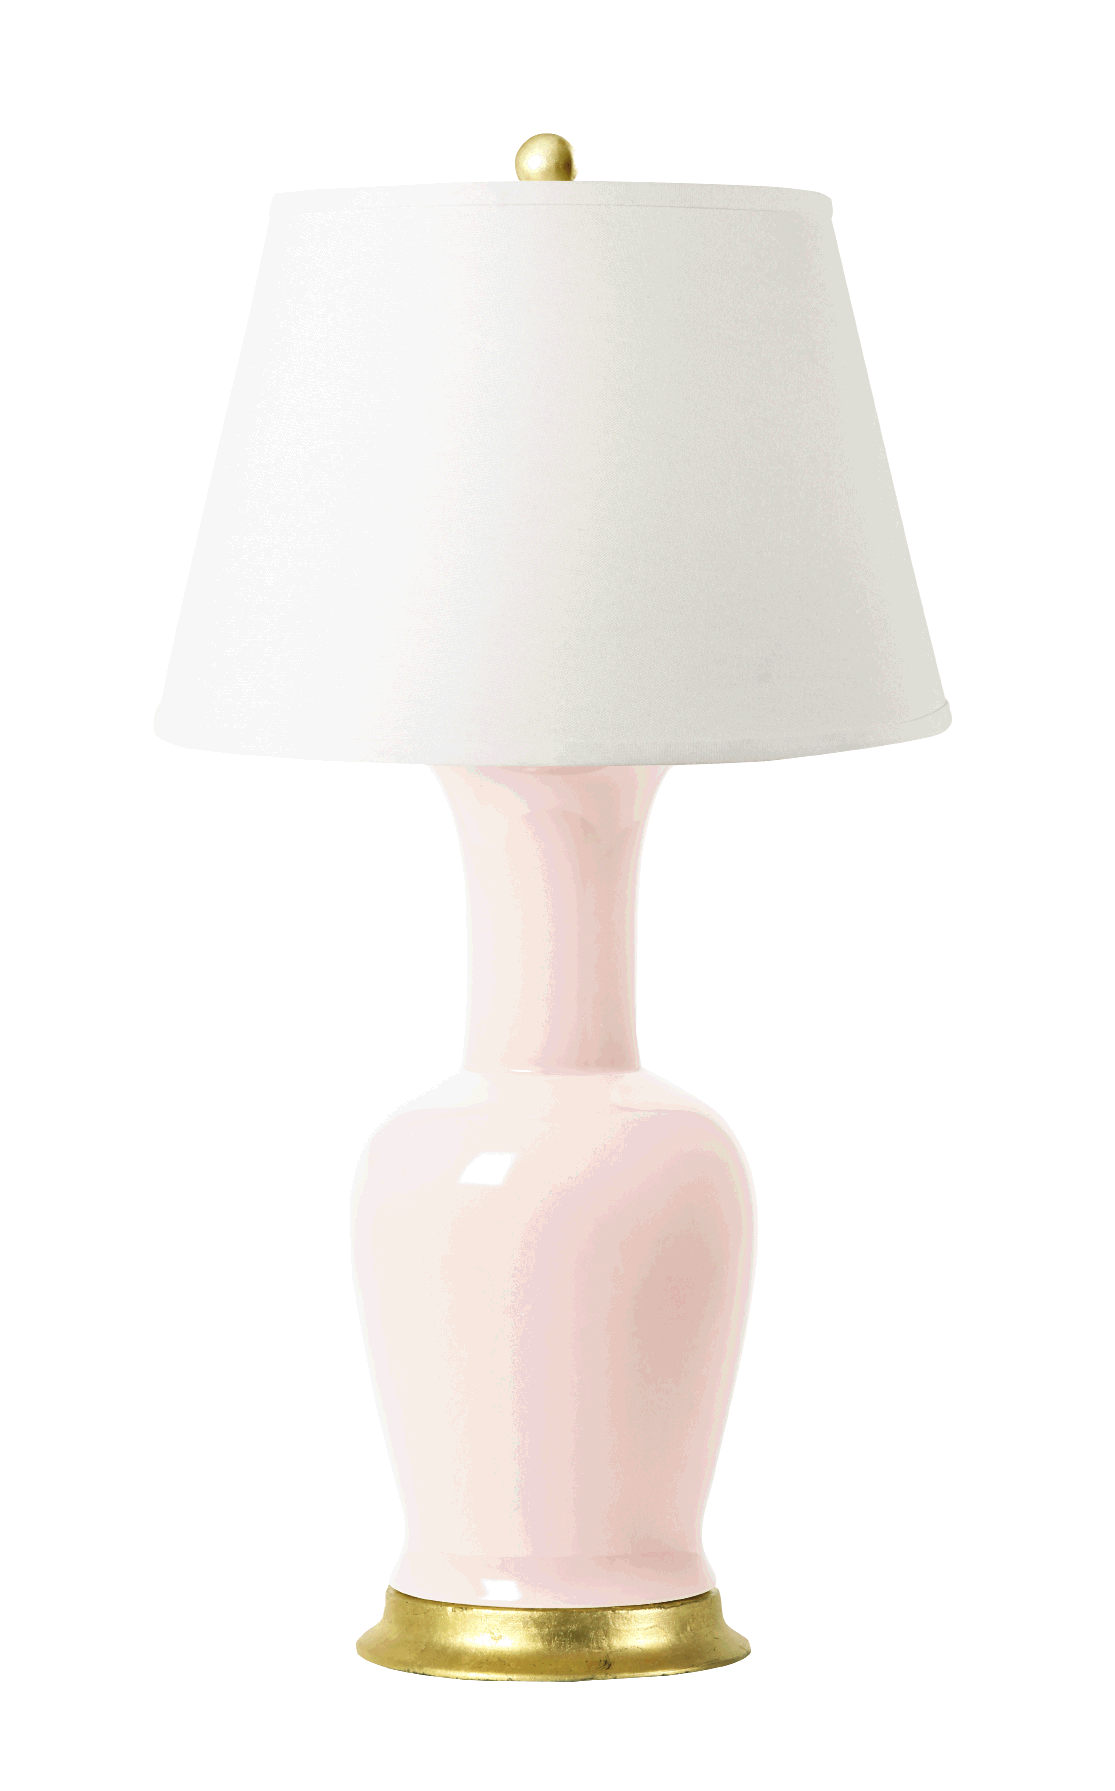 Bungalow 5 “Acacia” lamp, $577, at Elizabeth Stuart Design